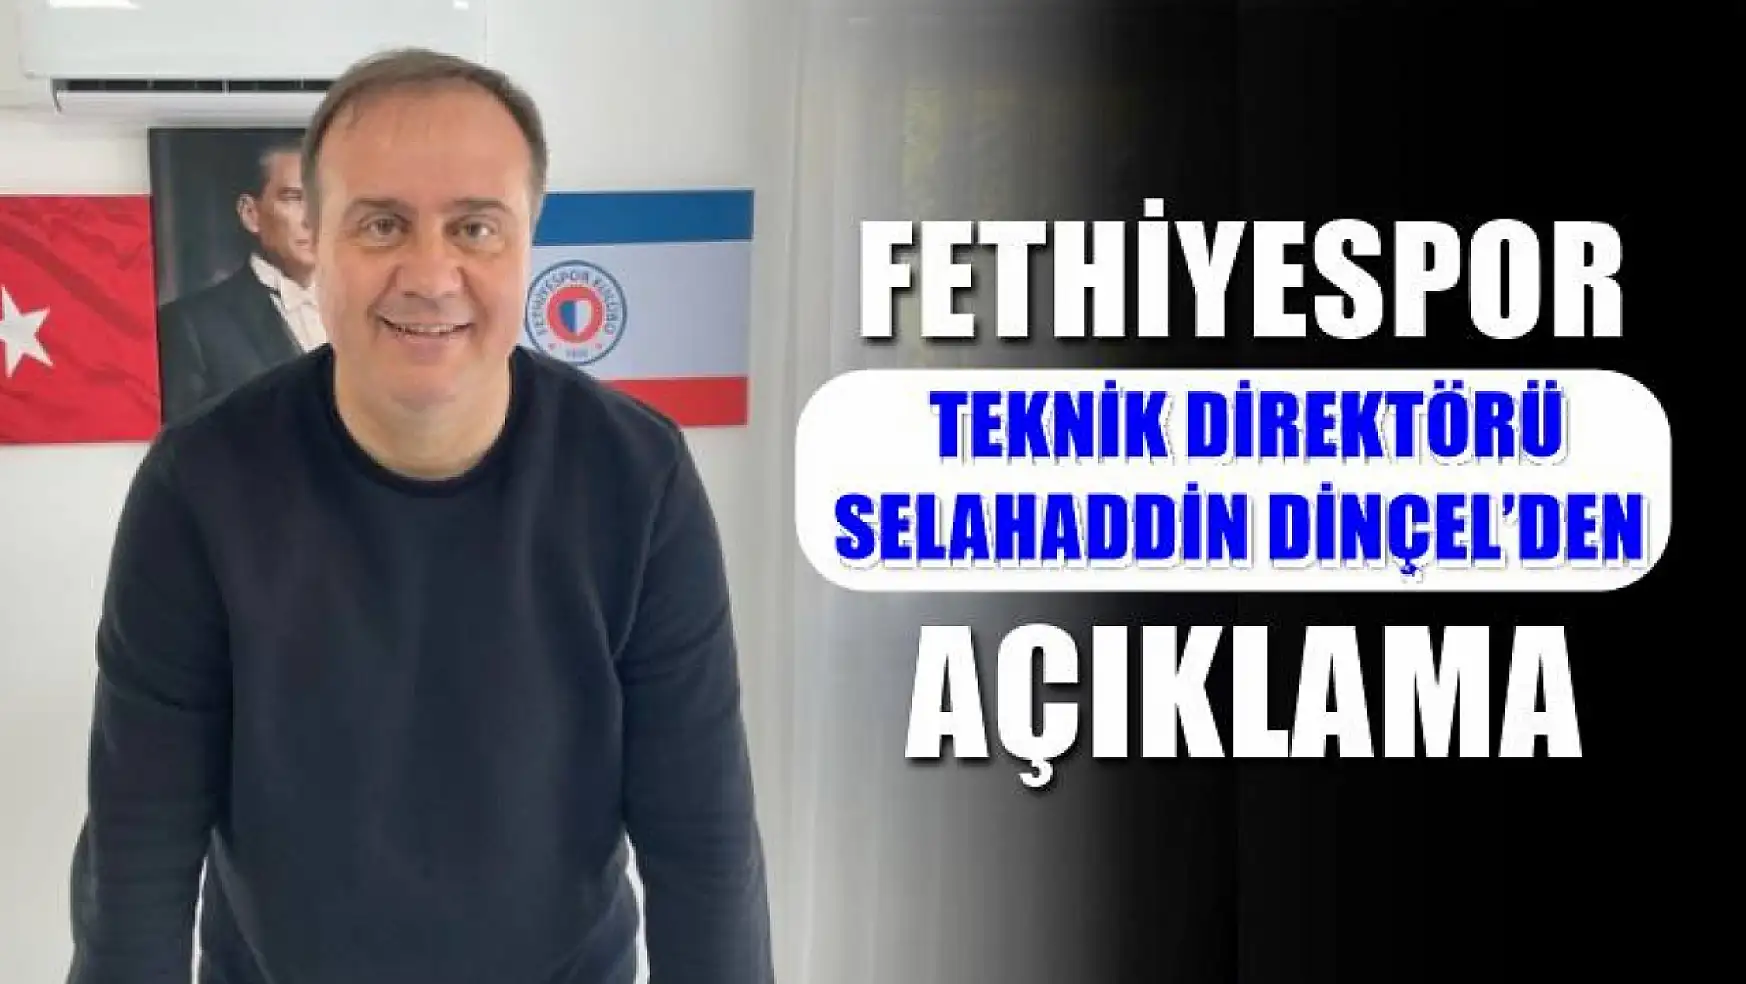 Fethiyespor Teknik Direktörü Selahaddin Dinçel Değerlendirmelerde Bulundu